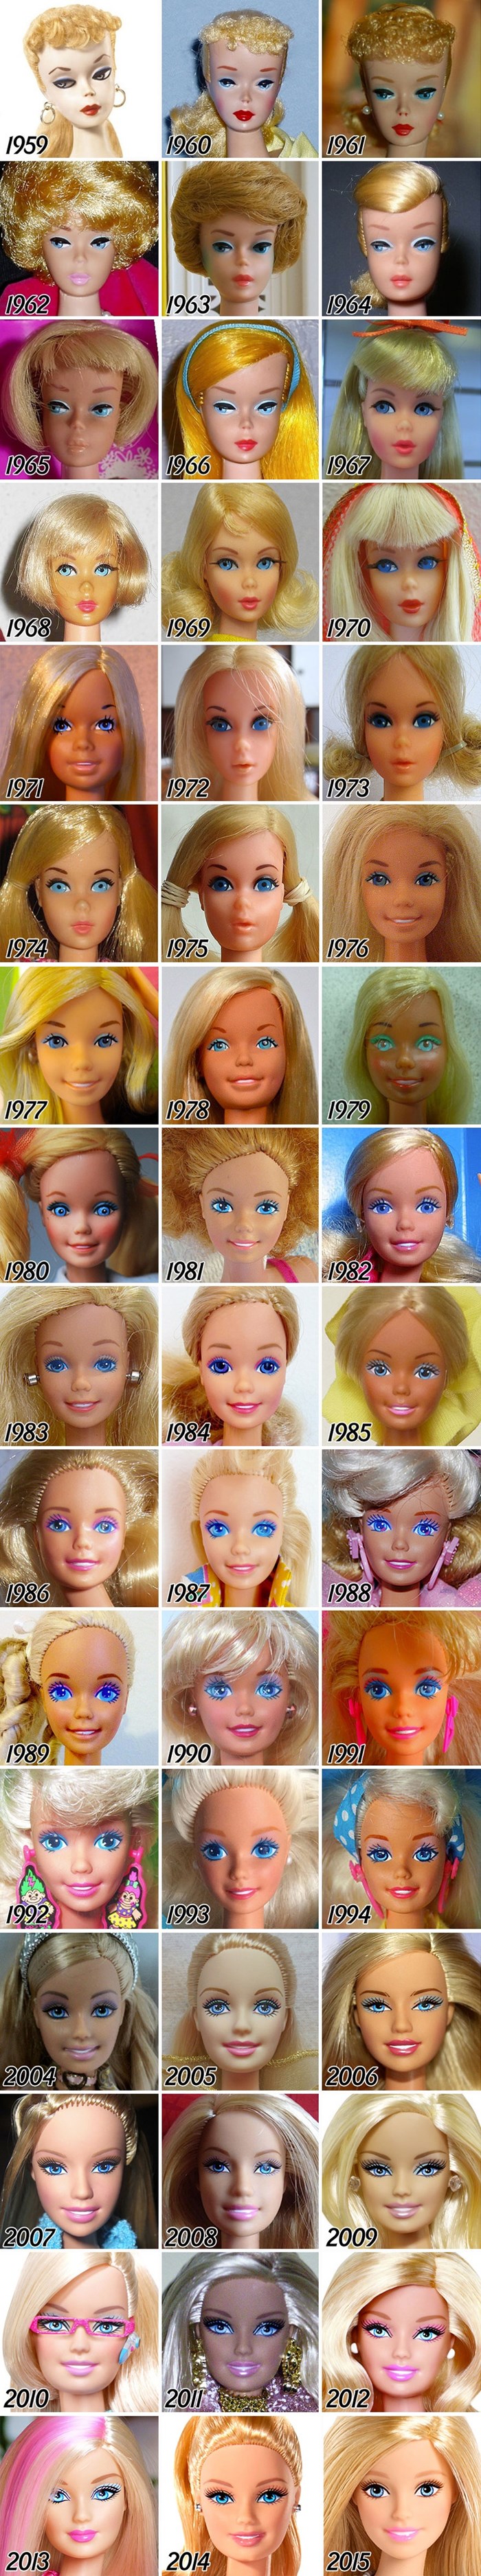 VREMEPLOV Pogledajte koliko se Barbie lutka promijenila od 1959. do danas